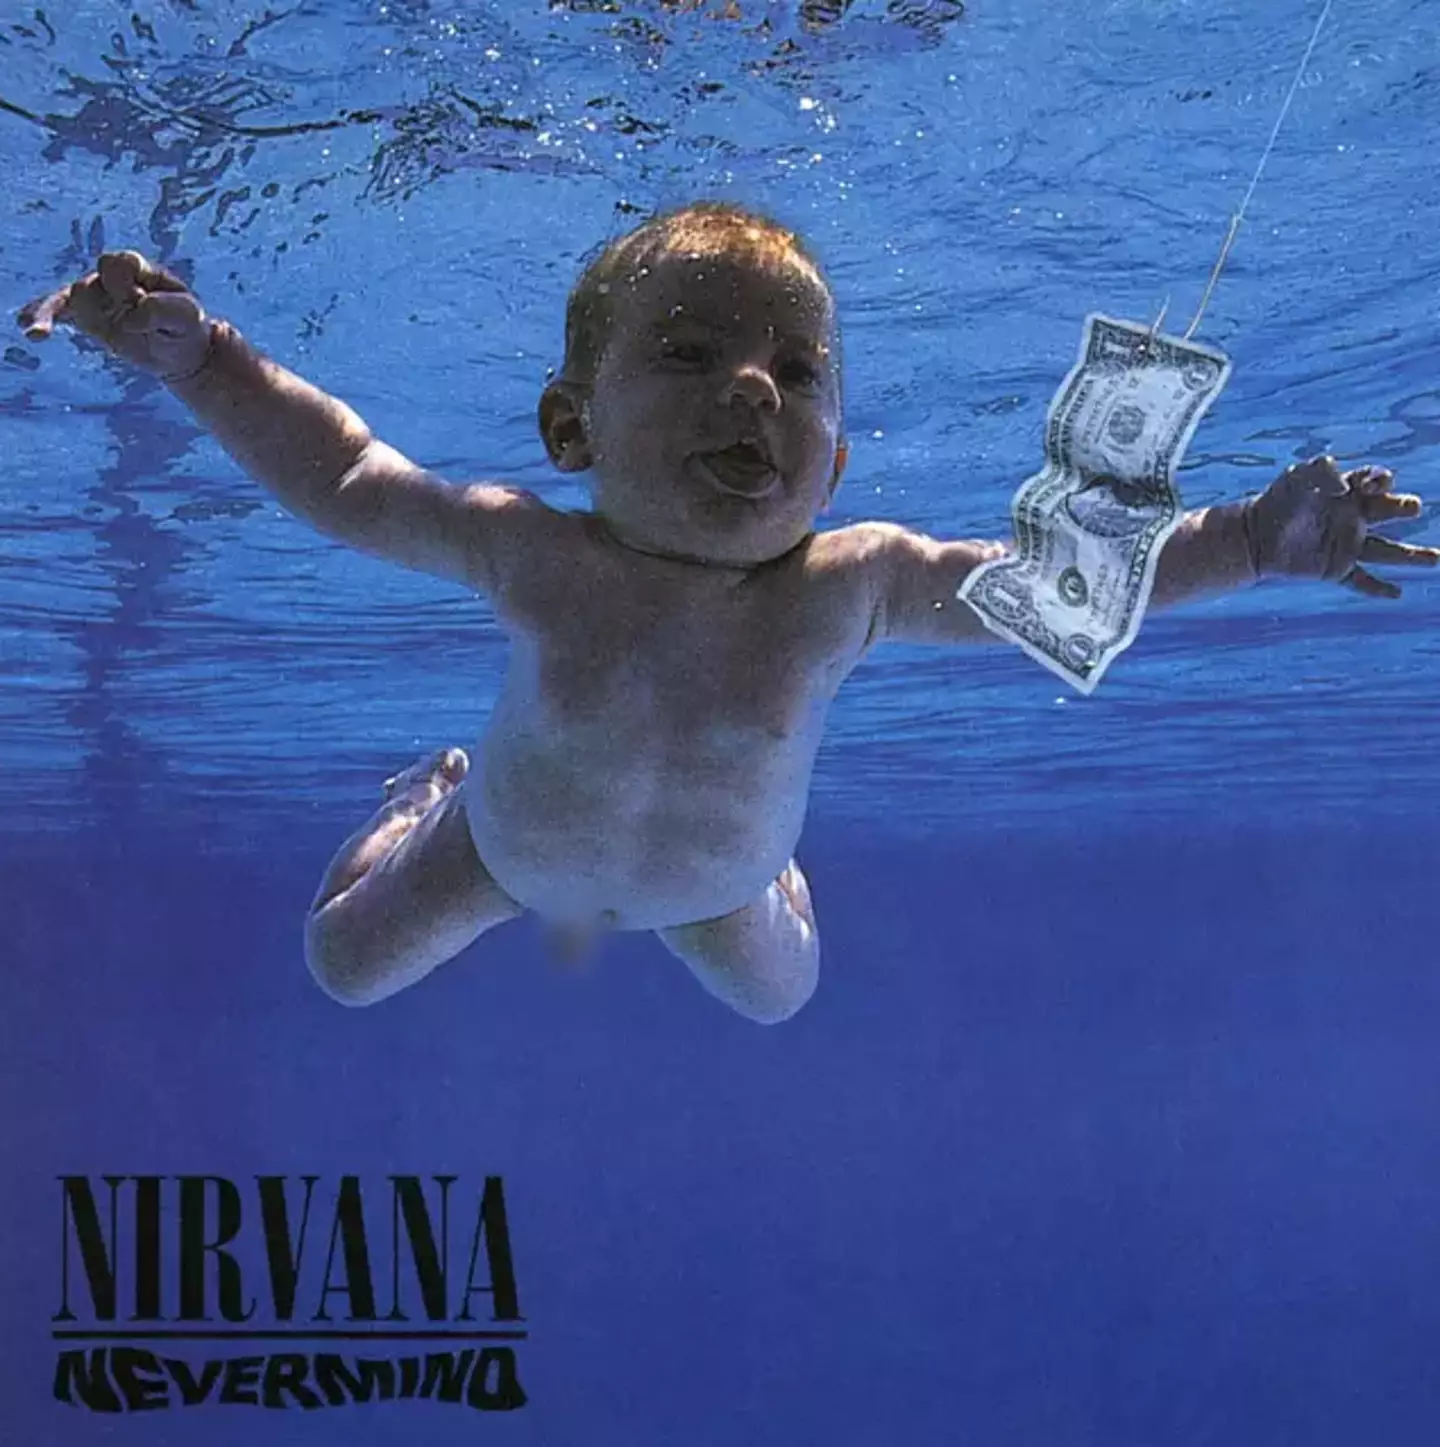 The 1991 album cover.